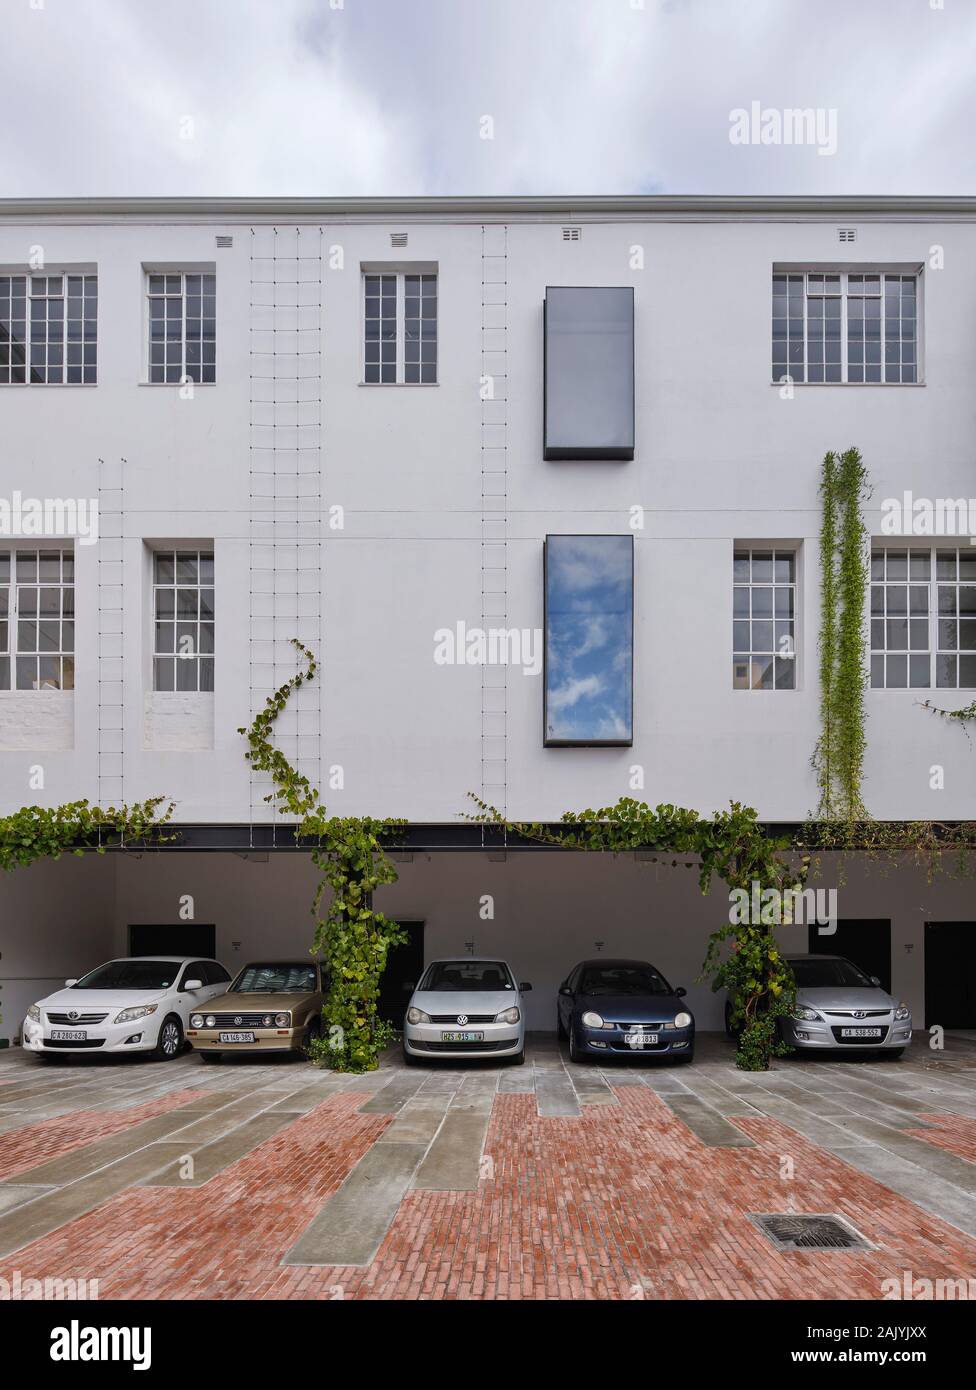 Cortile paesaggistico con parcheggio a baldacchino. Desmond & Leah Tutu Fondazione Legacy, Cape Town, Sud Africa. Architetto: Makeka Design Lab, 2019. Foto Stock